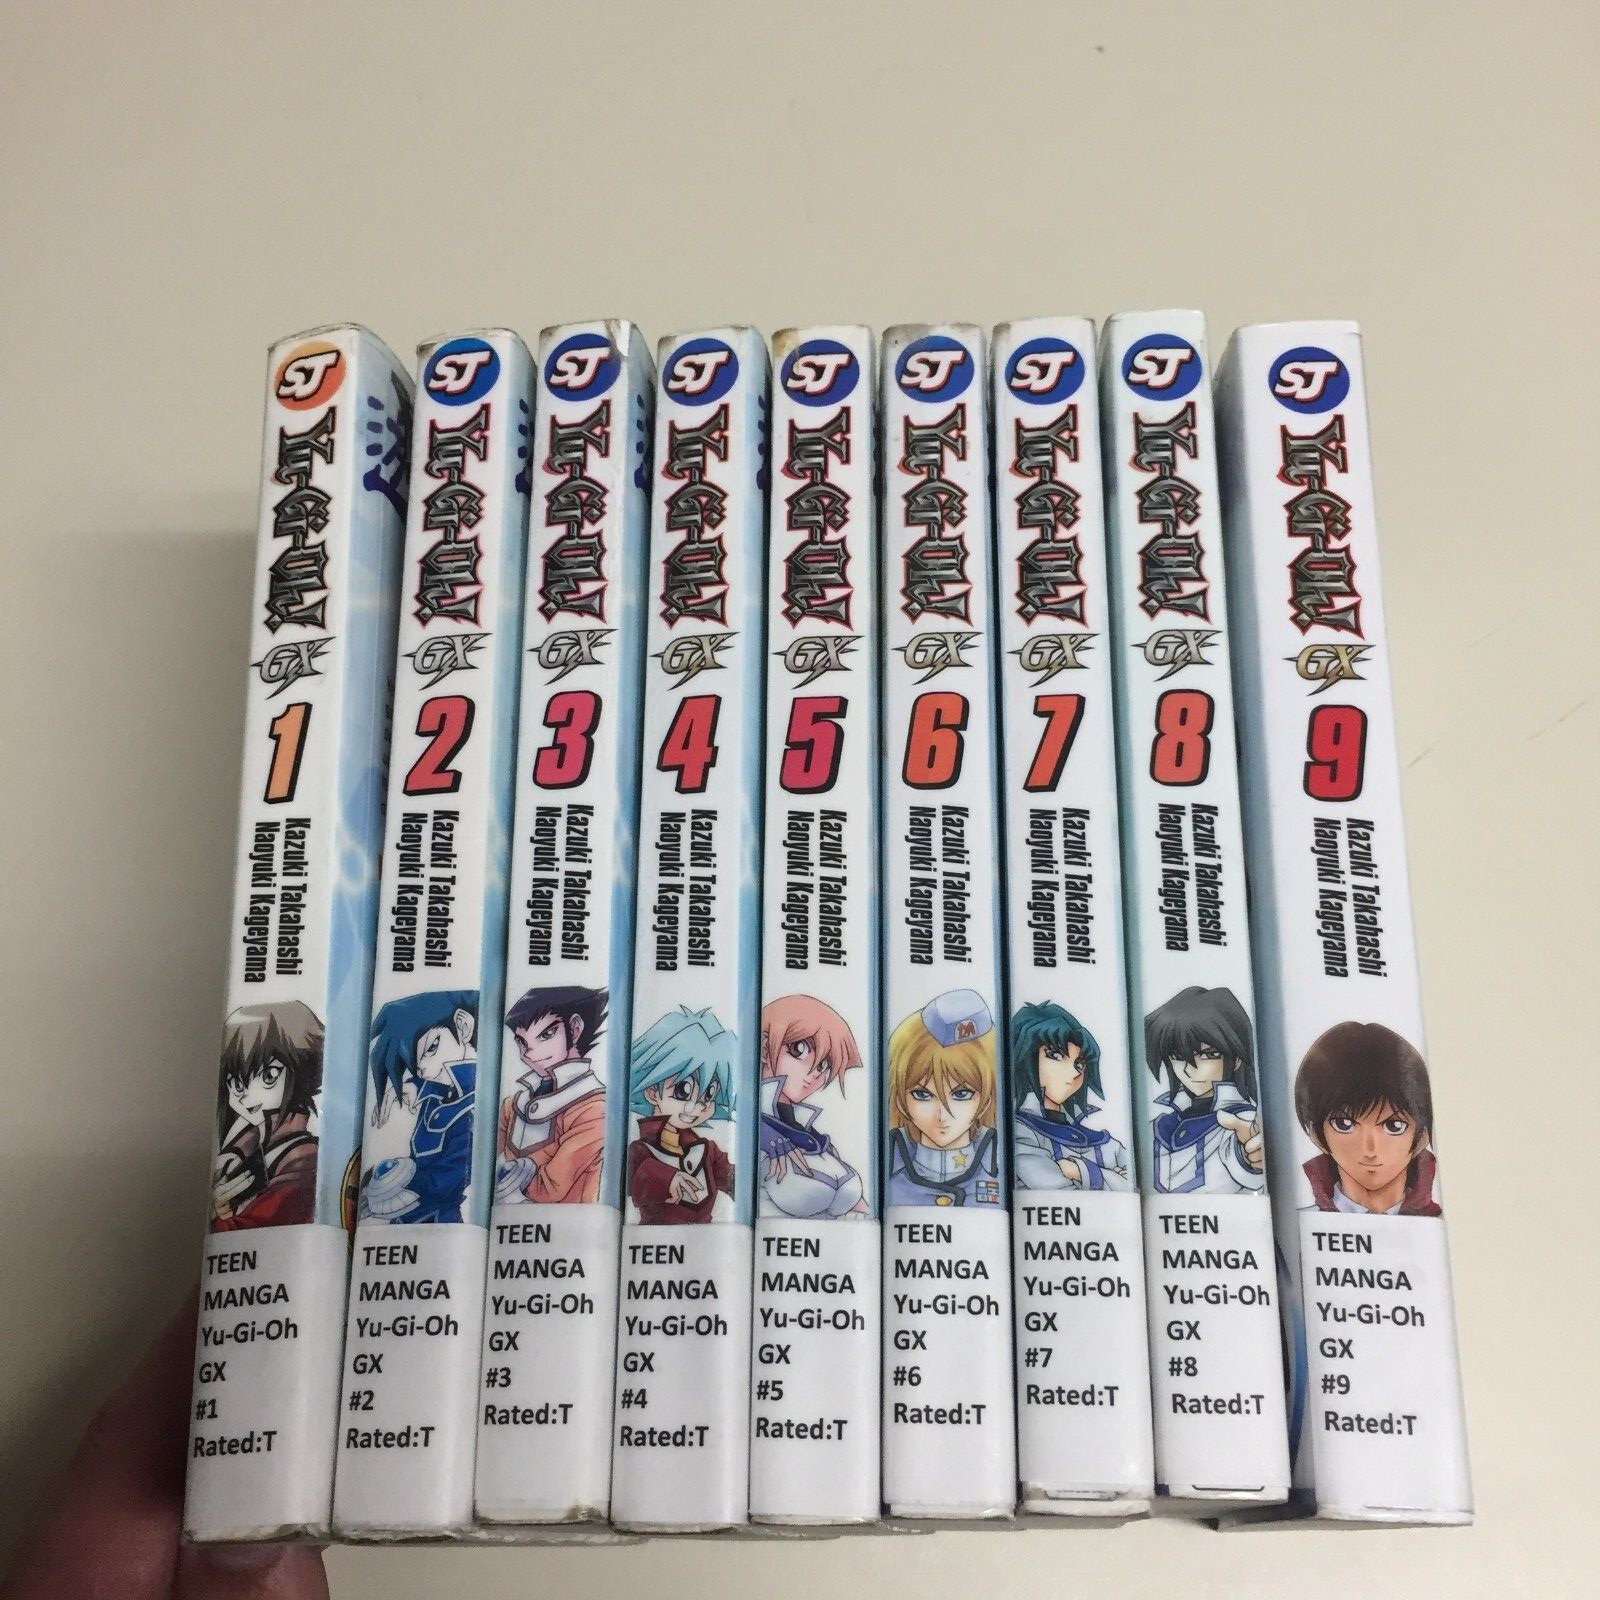 Yu-Gi-Oh YuGiOh GX Complete English Manga Set Series Volumes 1-9 Vol